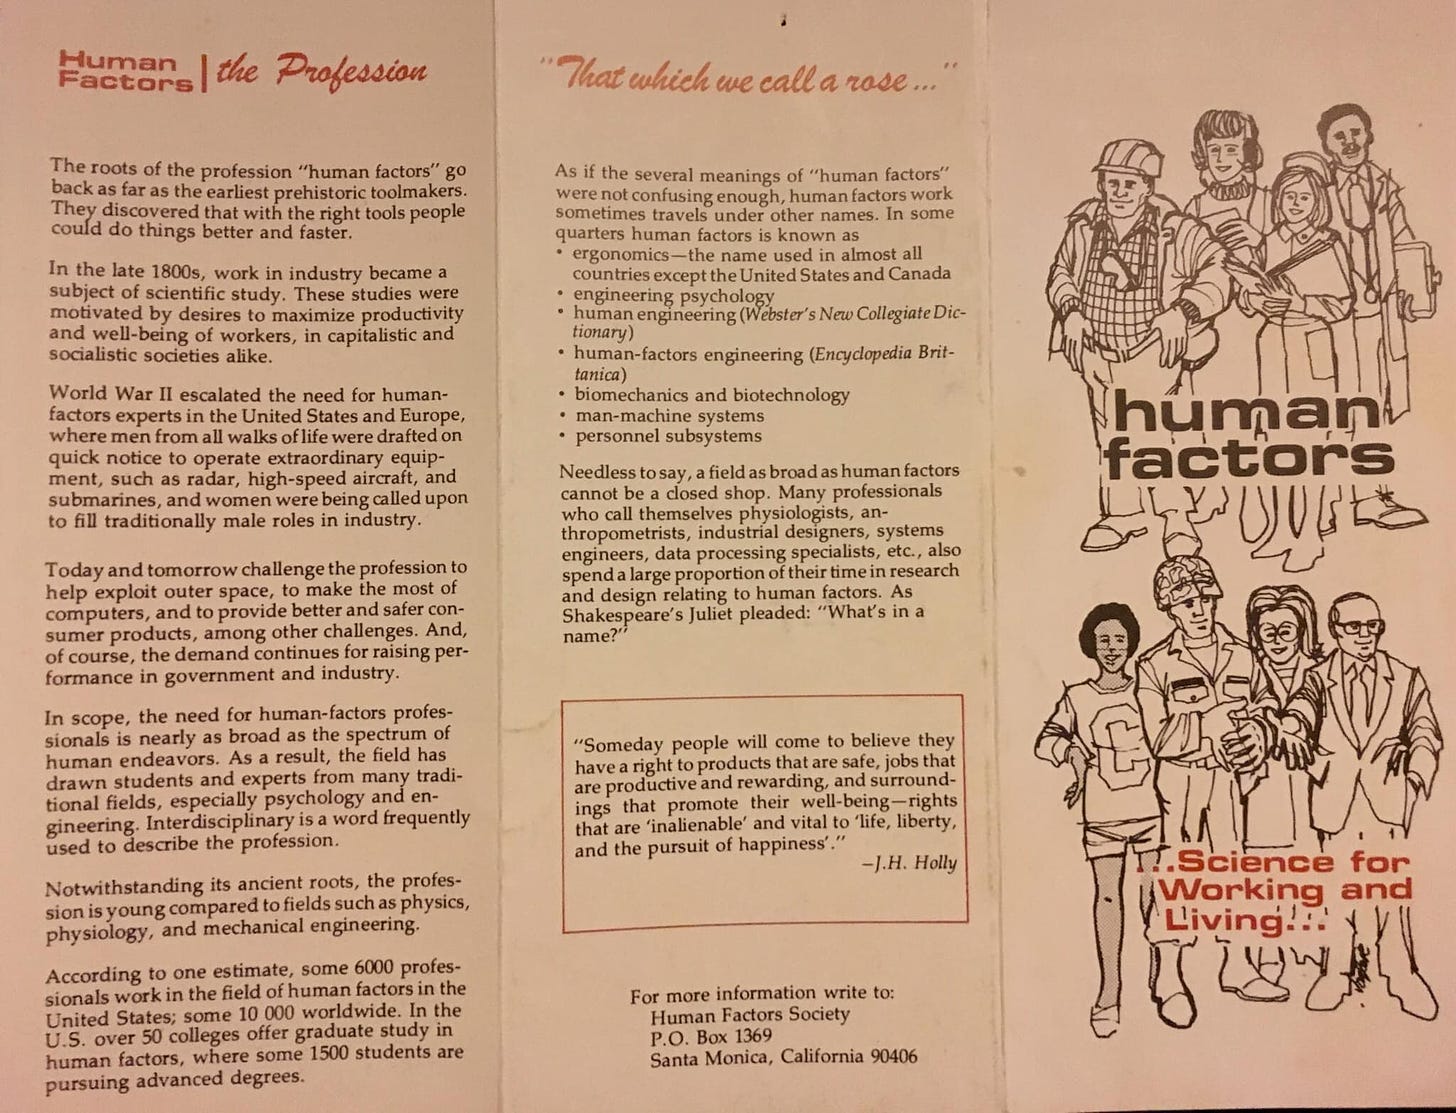 Human Factors pamphlet